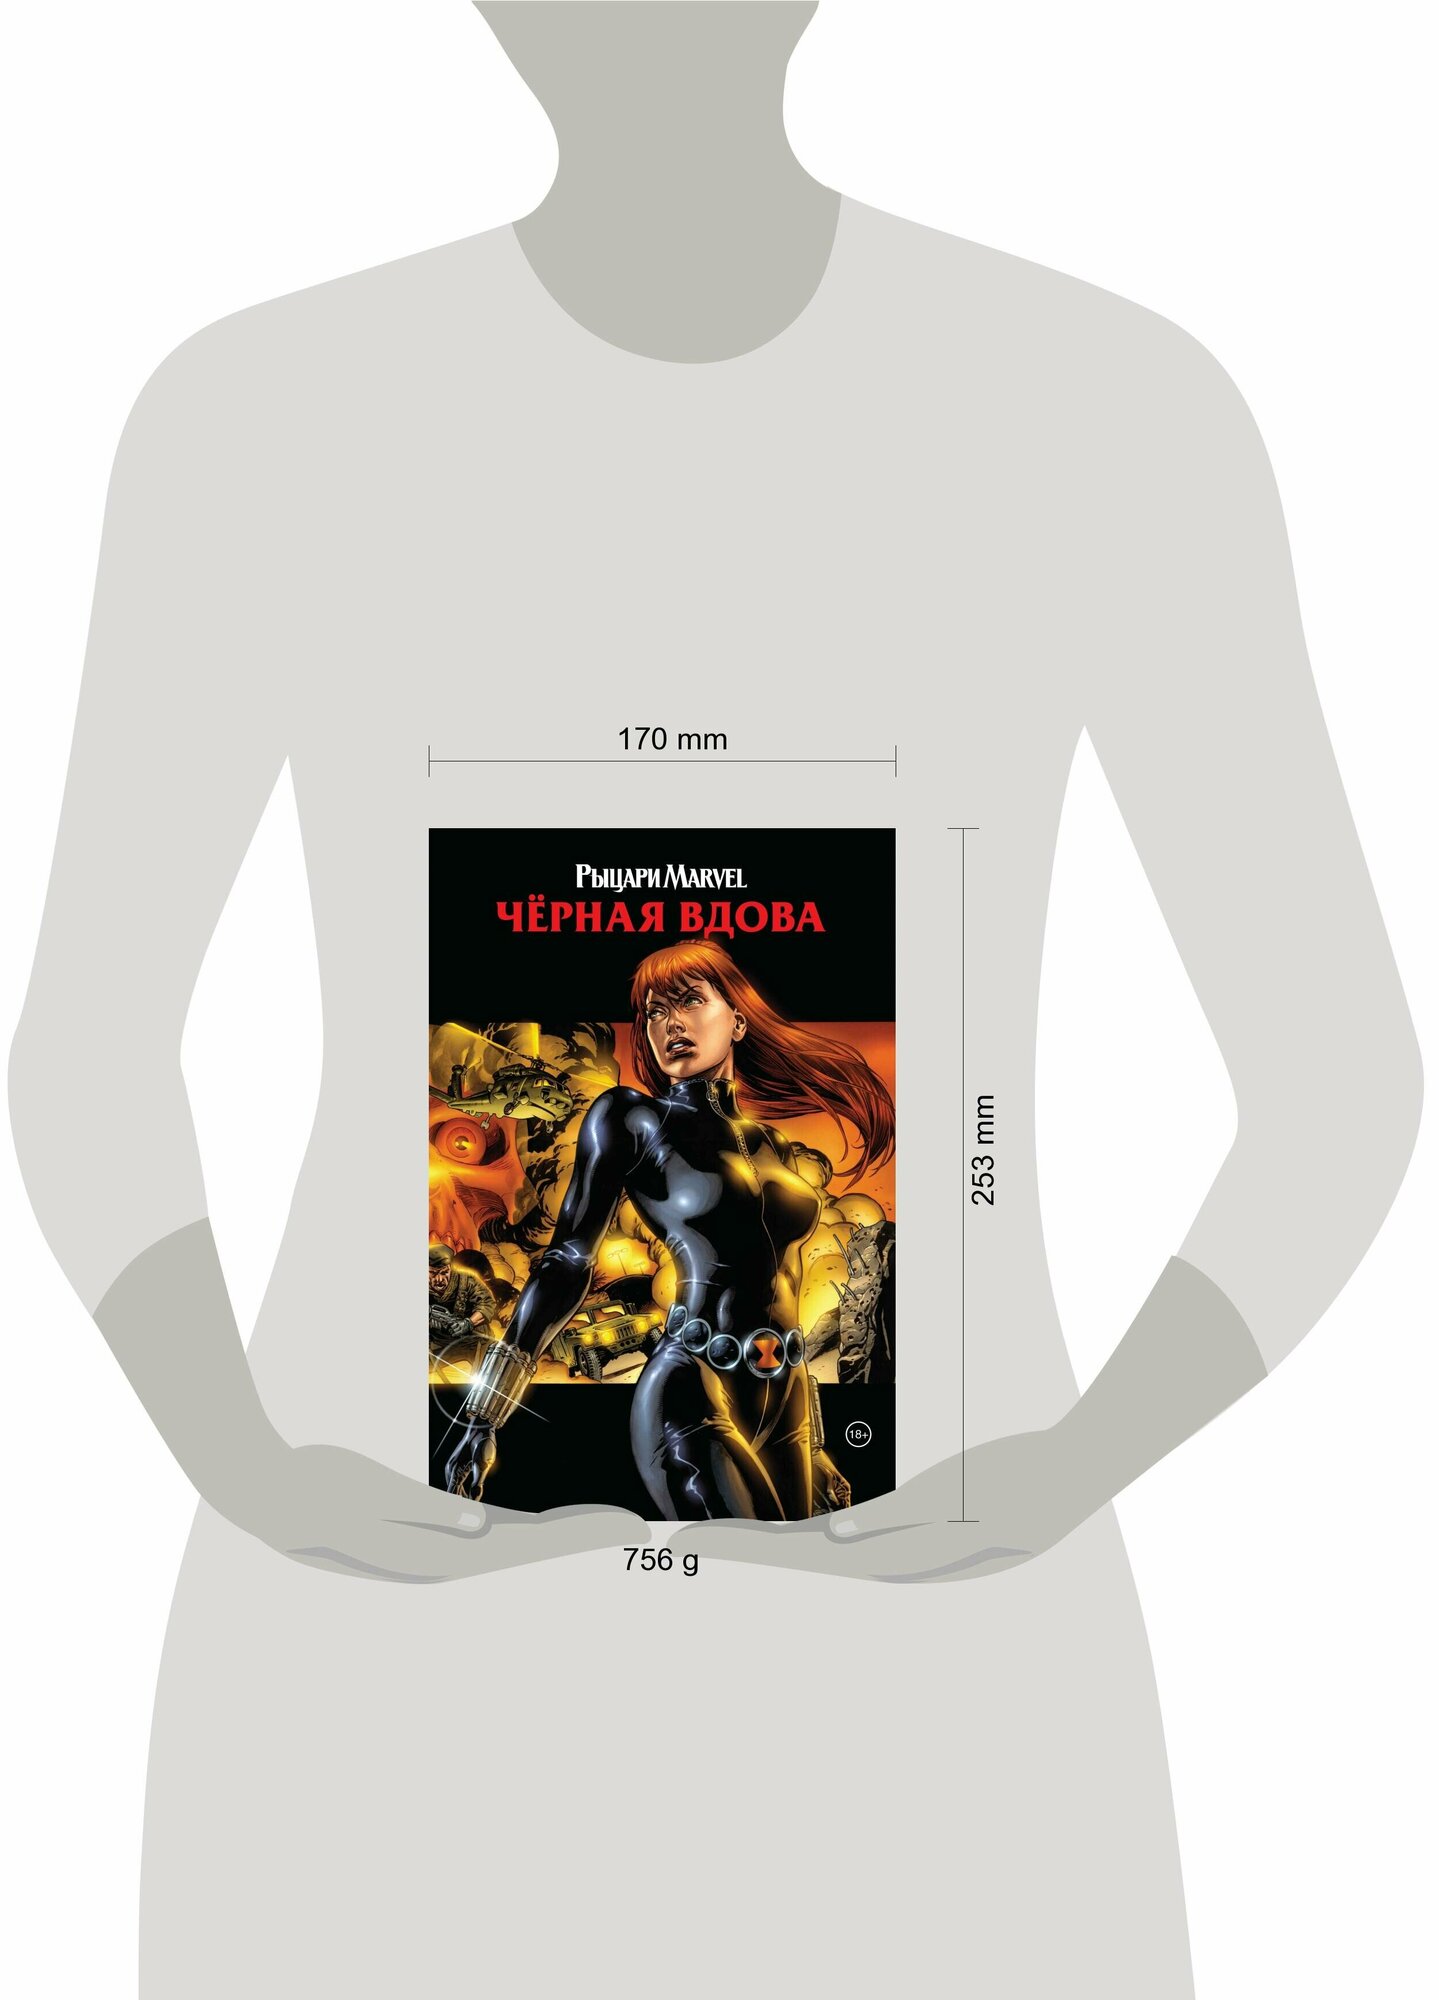 Рыцари Marvel. Чёрная вдова. Обложка с Наташей Романовой - фото №3